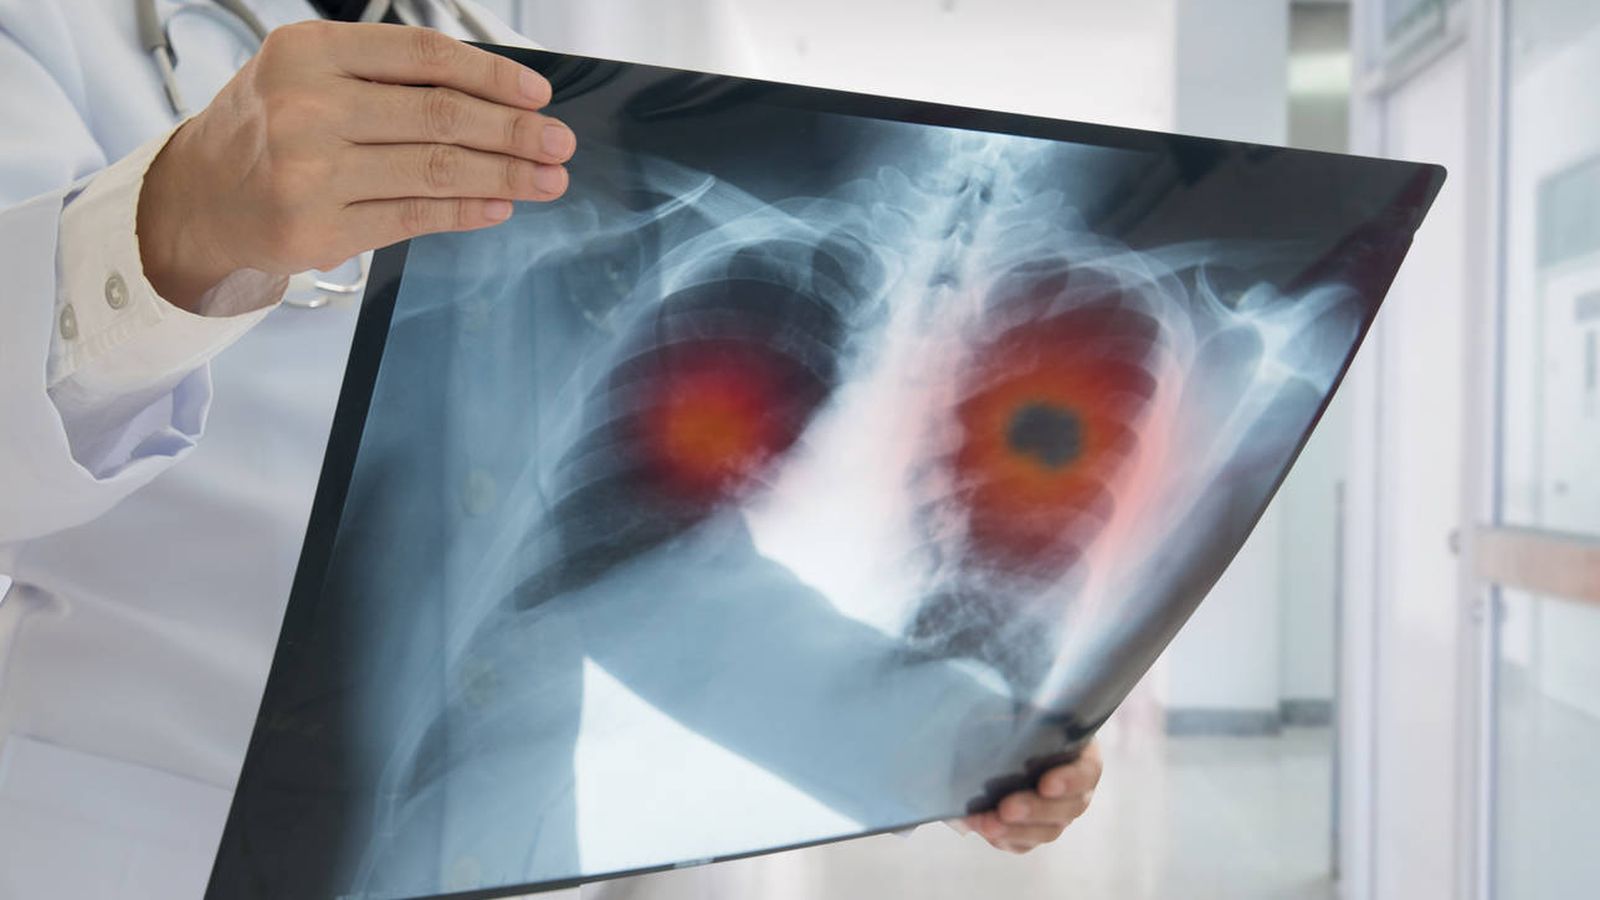 Les spécialistes ont cherché à comprendre la détérioration des poumons et des patients 1 an après avoir souffert du COVID-19 (photo : El Confidencial)